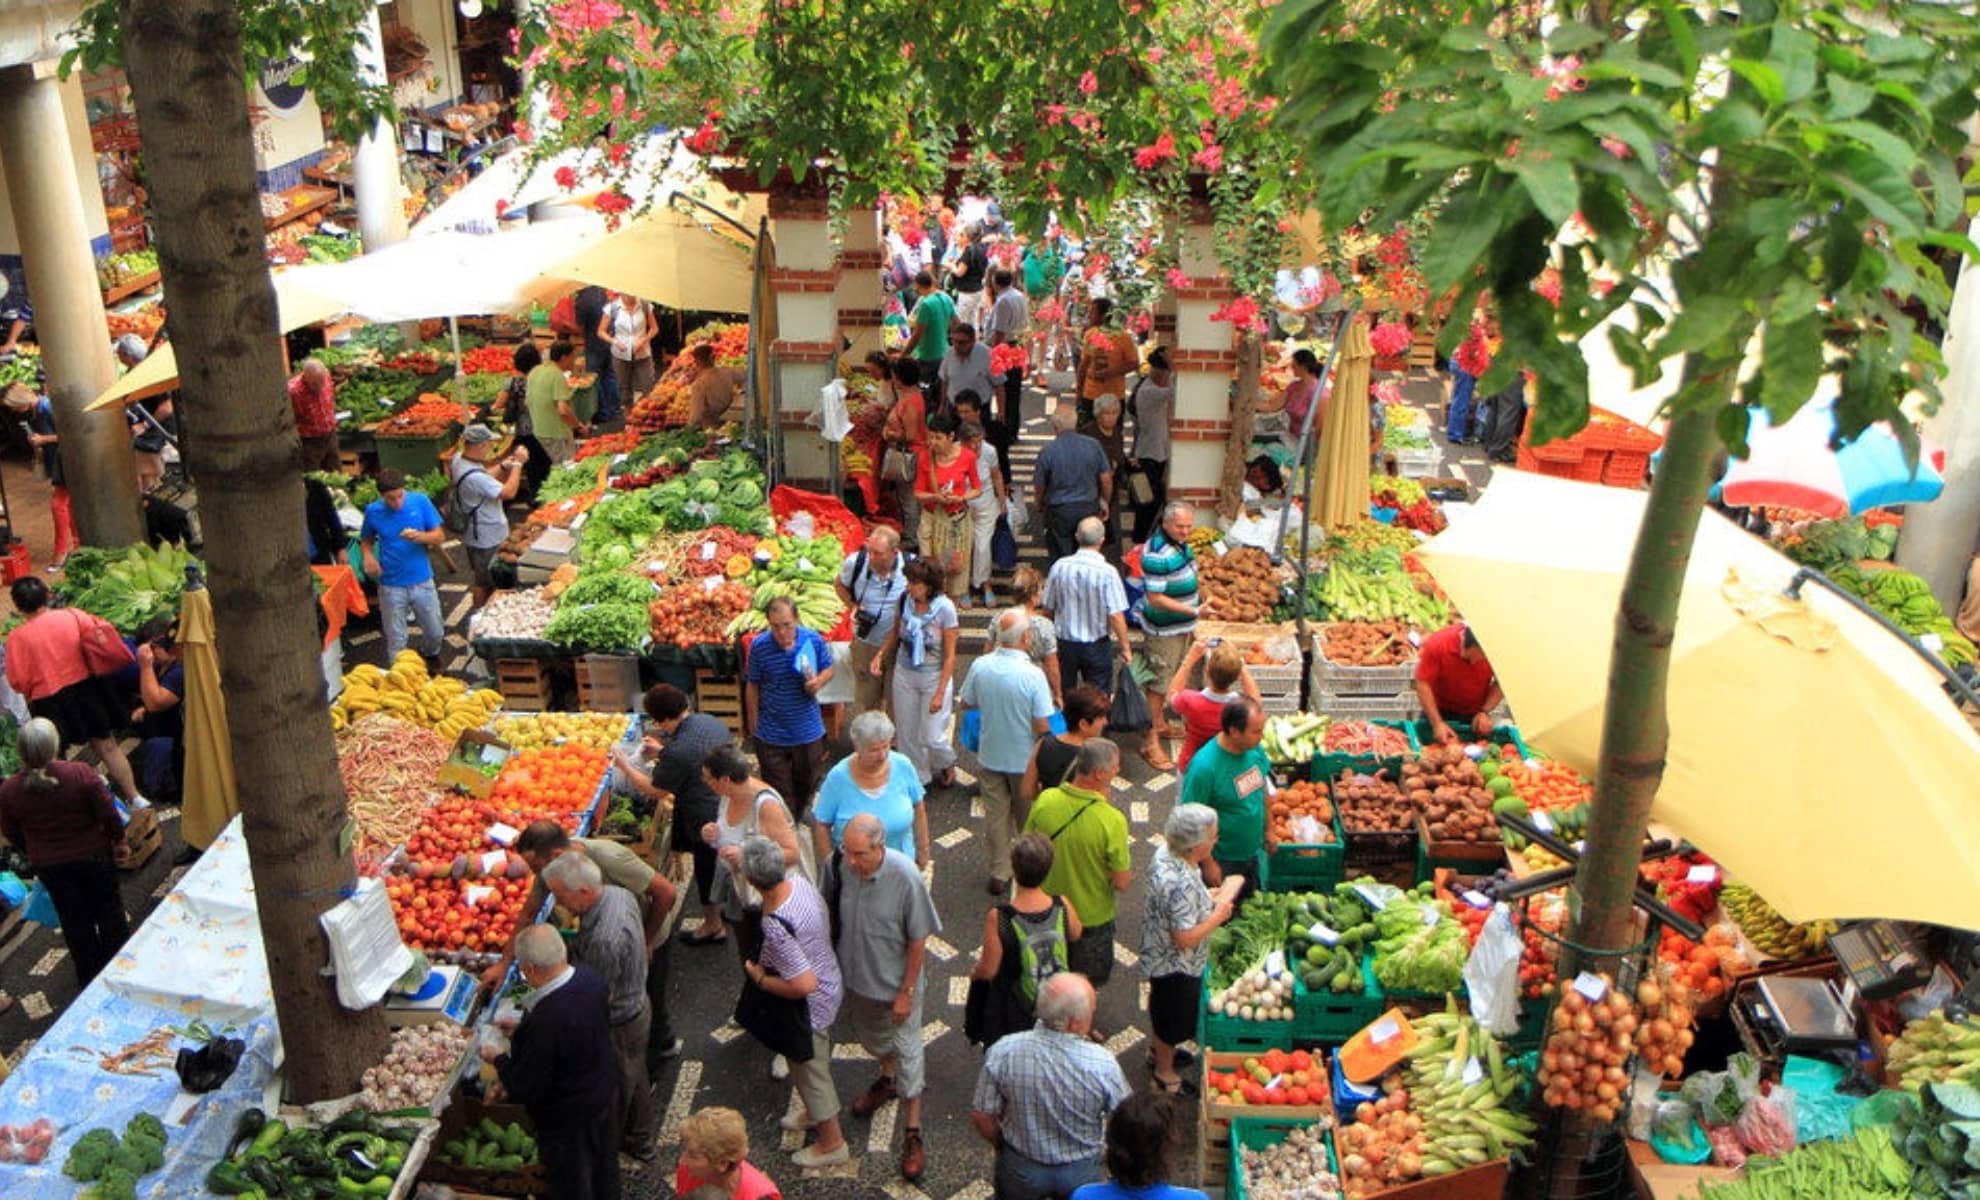 Le marché de légumes, fruits et fleures à Funchal, Madère